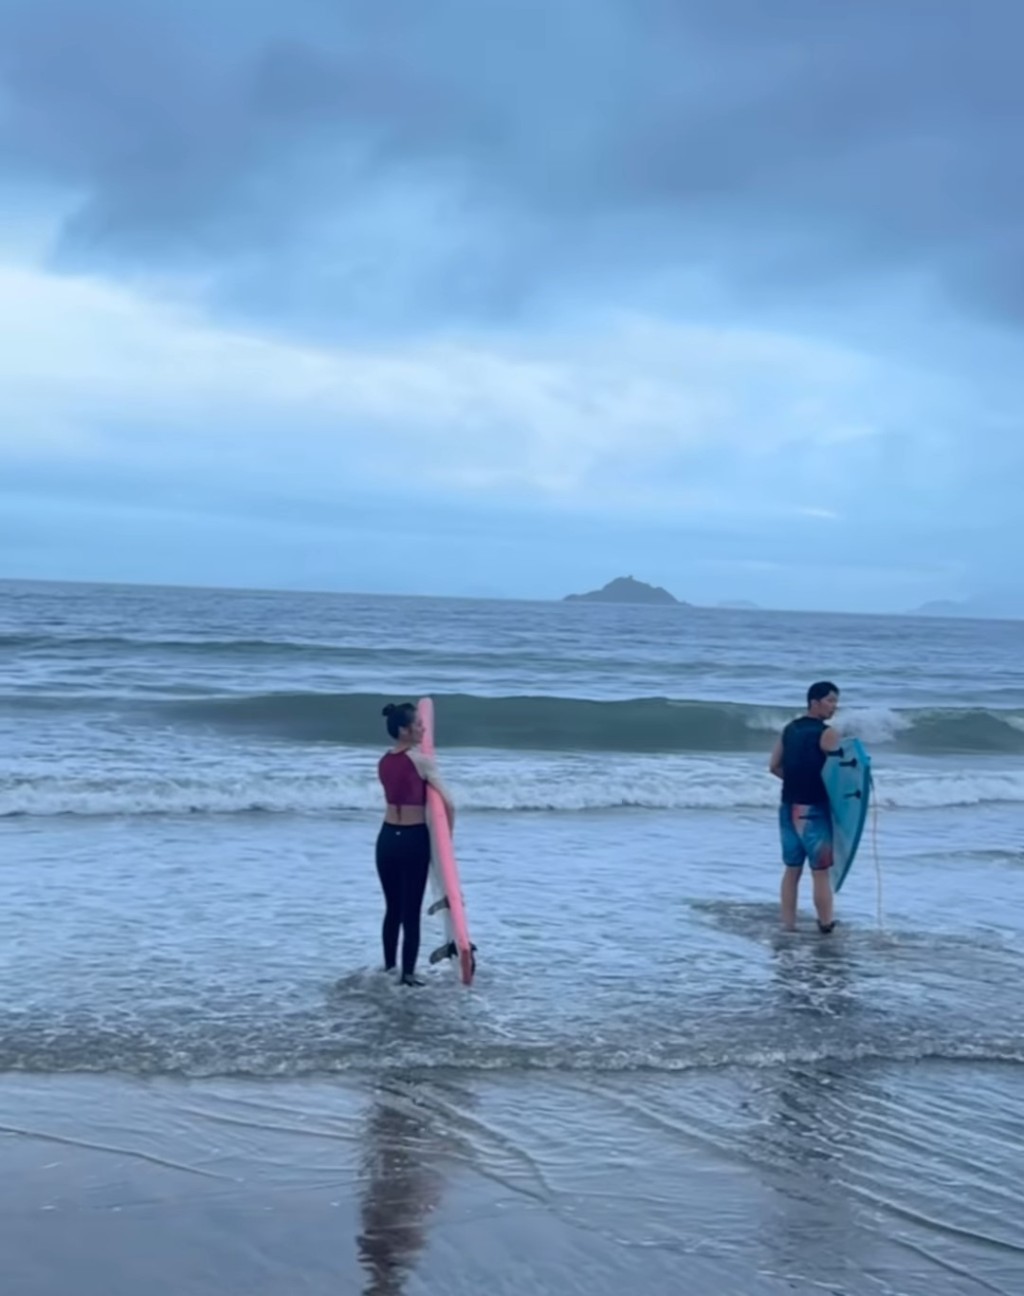 冯盈盈拿著滑浪板跟随著型男到海边滑浪。